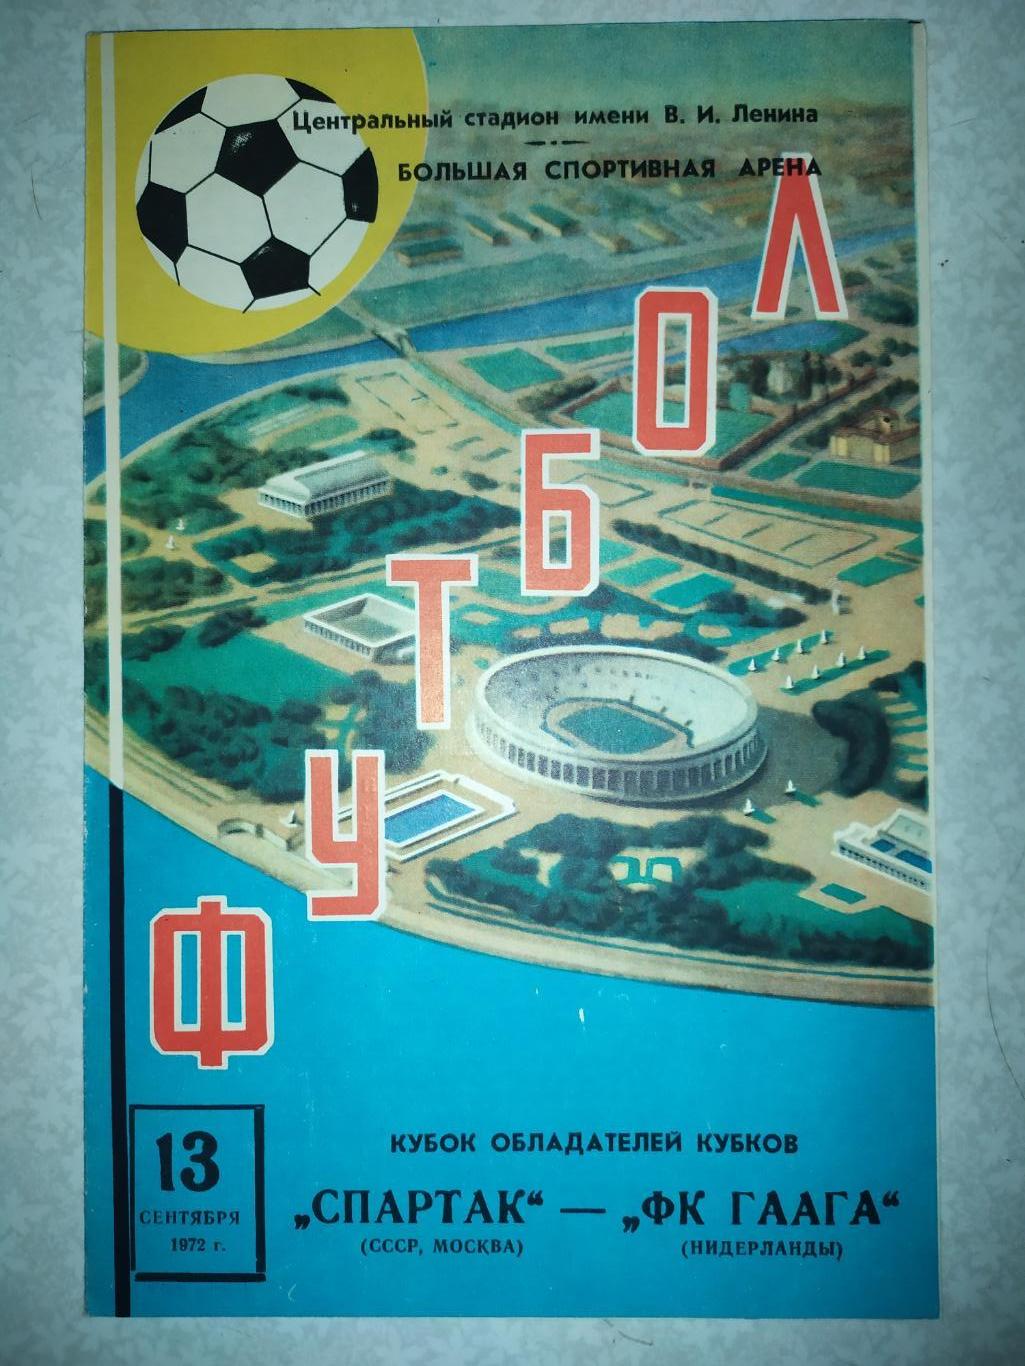 Спартак Москва -Гаага 13.09.1972 кубок кубков